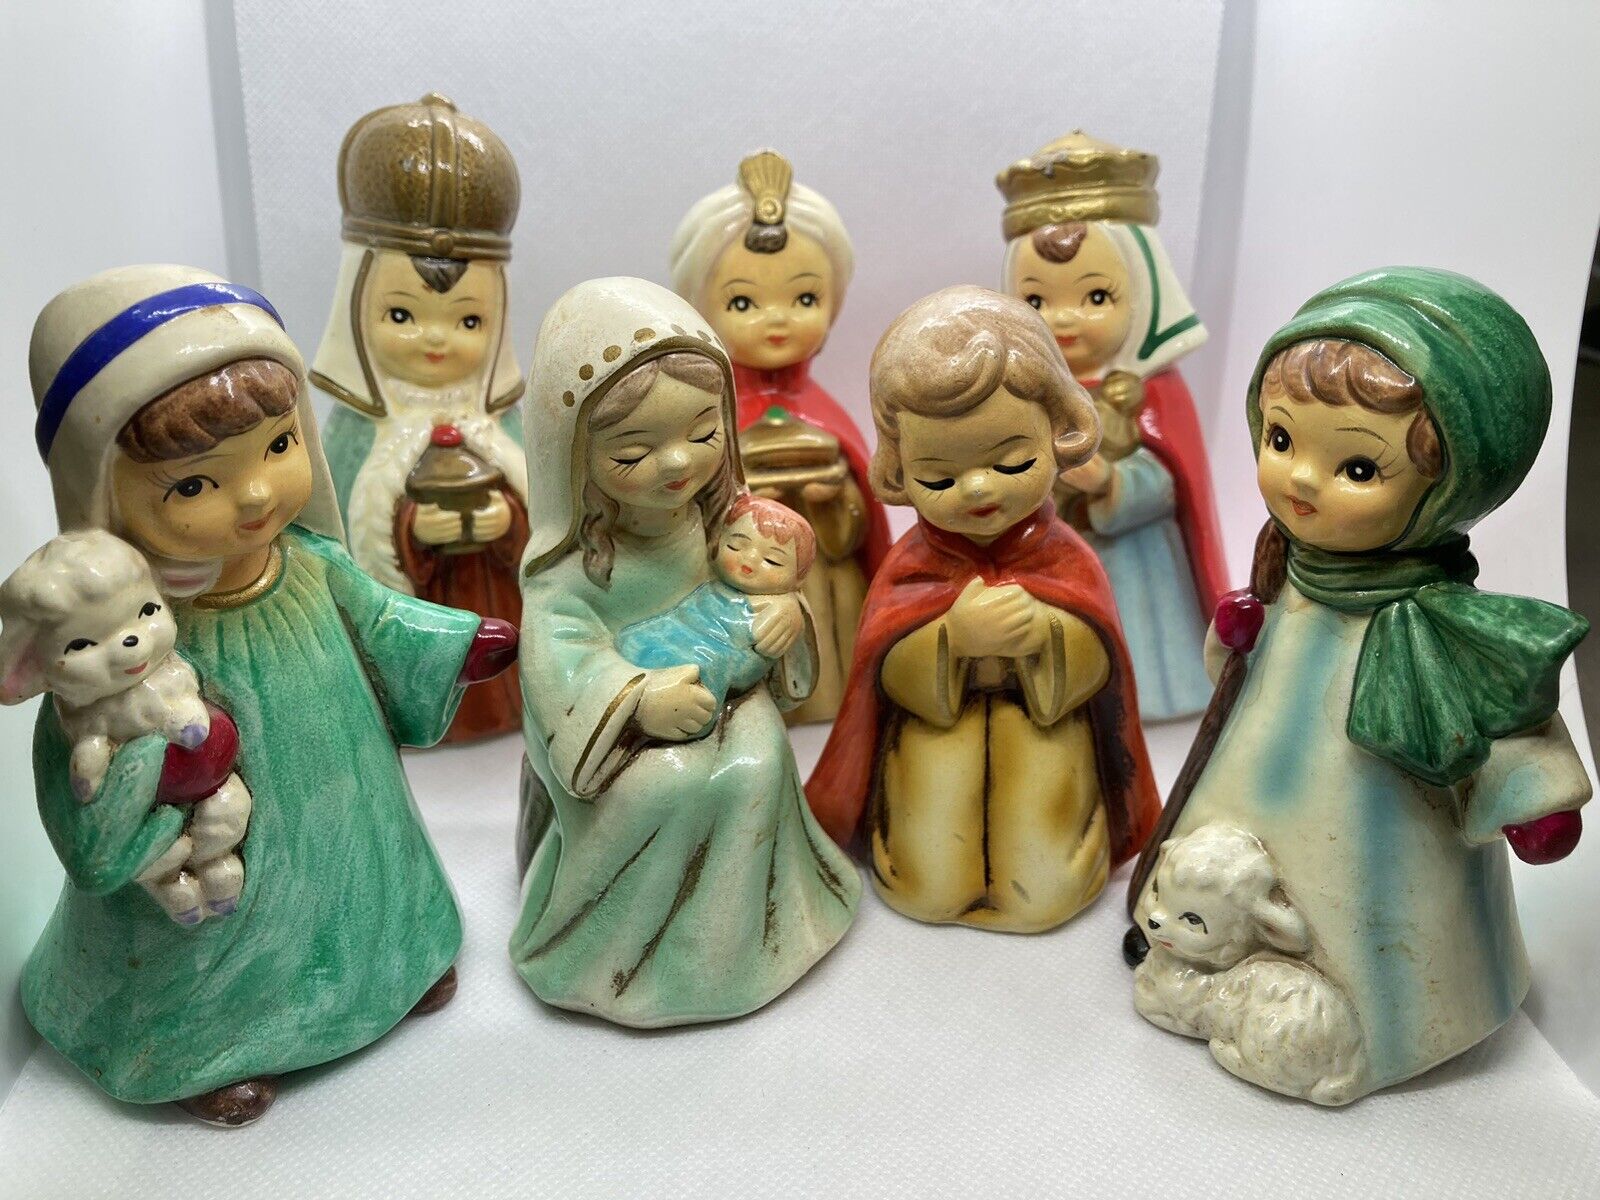 Vintage Josef Originals Children's Nativity 7 Piece Set Made In Korea 4” Tall